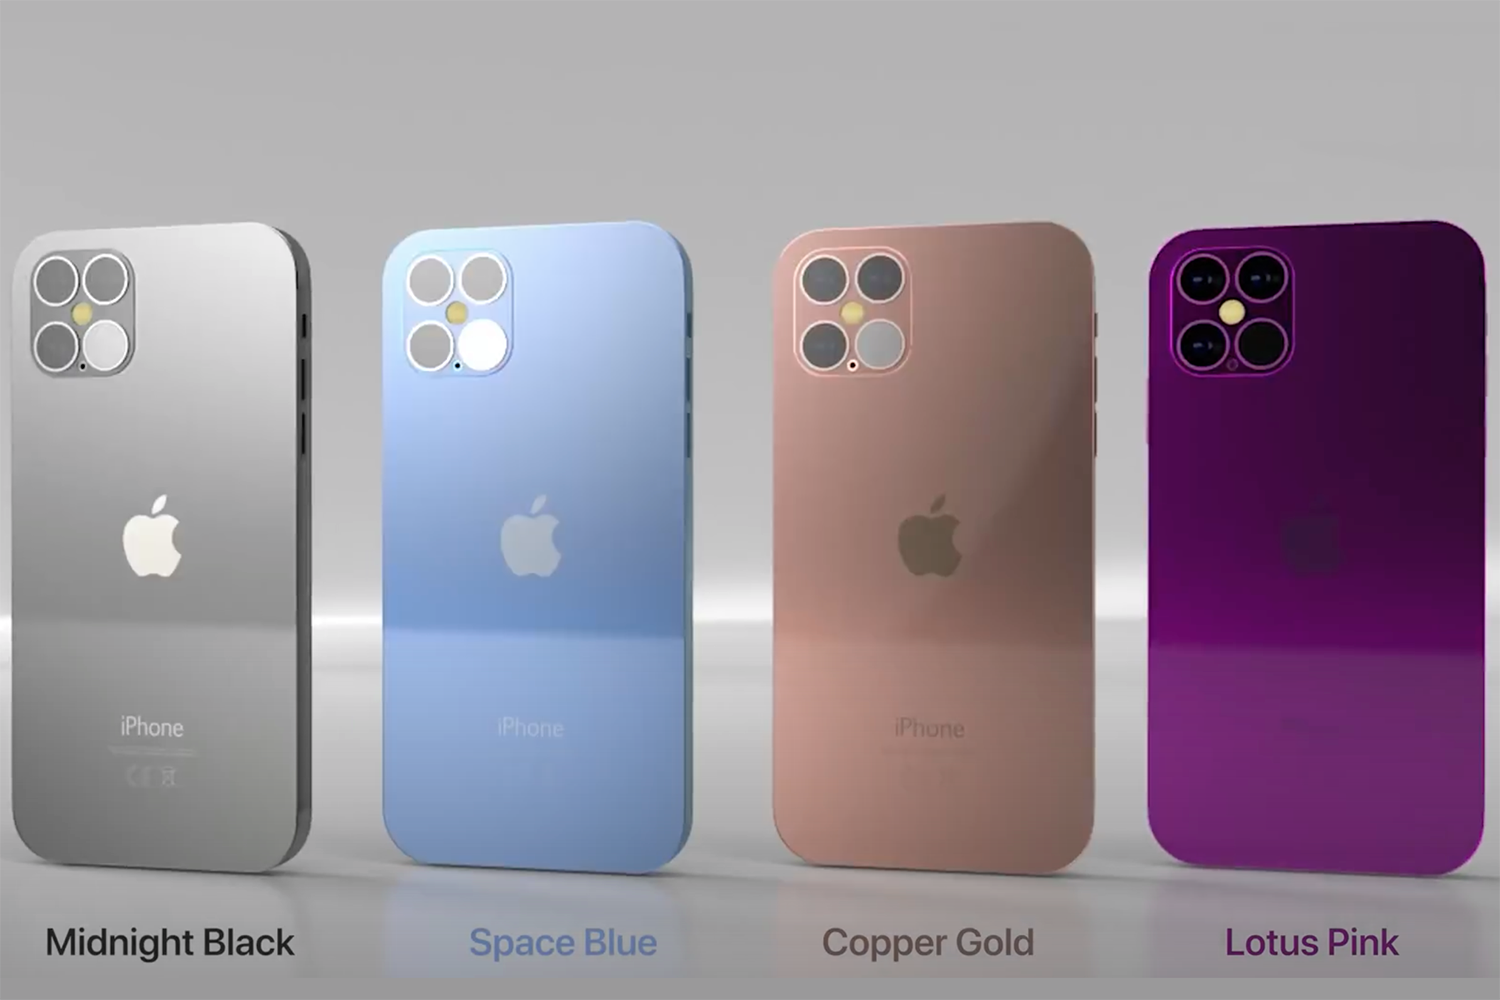 Chiêm ngưỡng thiết kế mới nhất siêu đẹp của iPhone 12 - Ảnh 3.